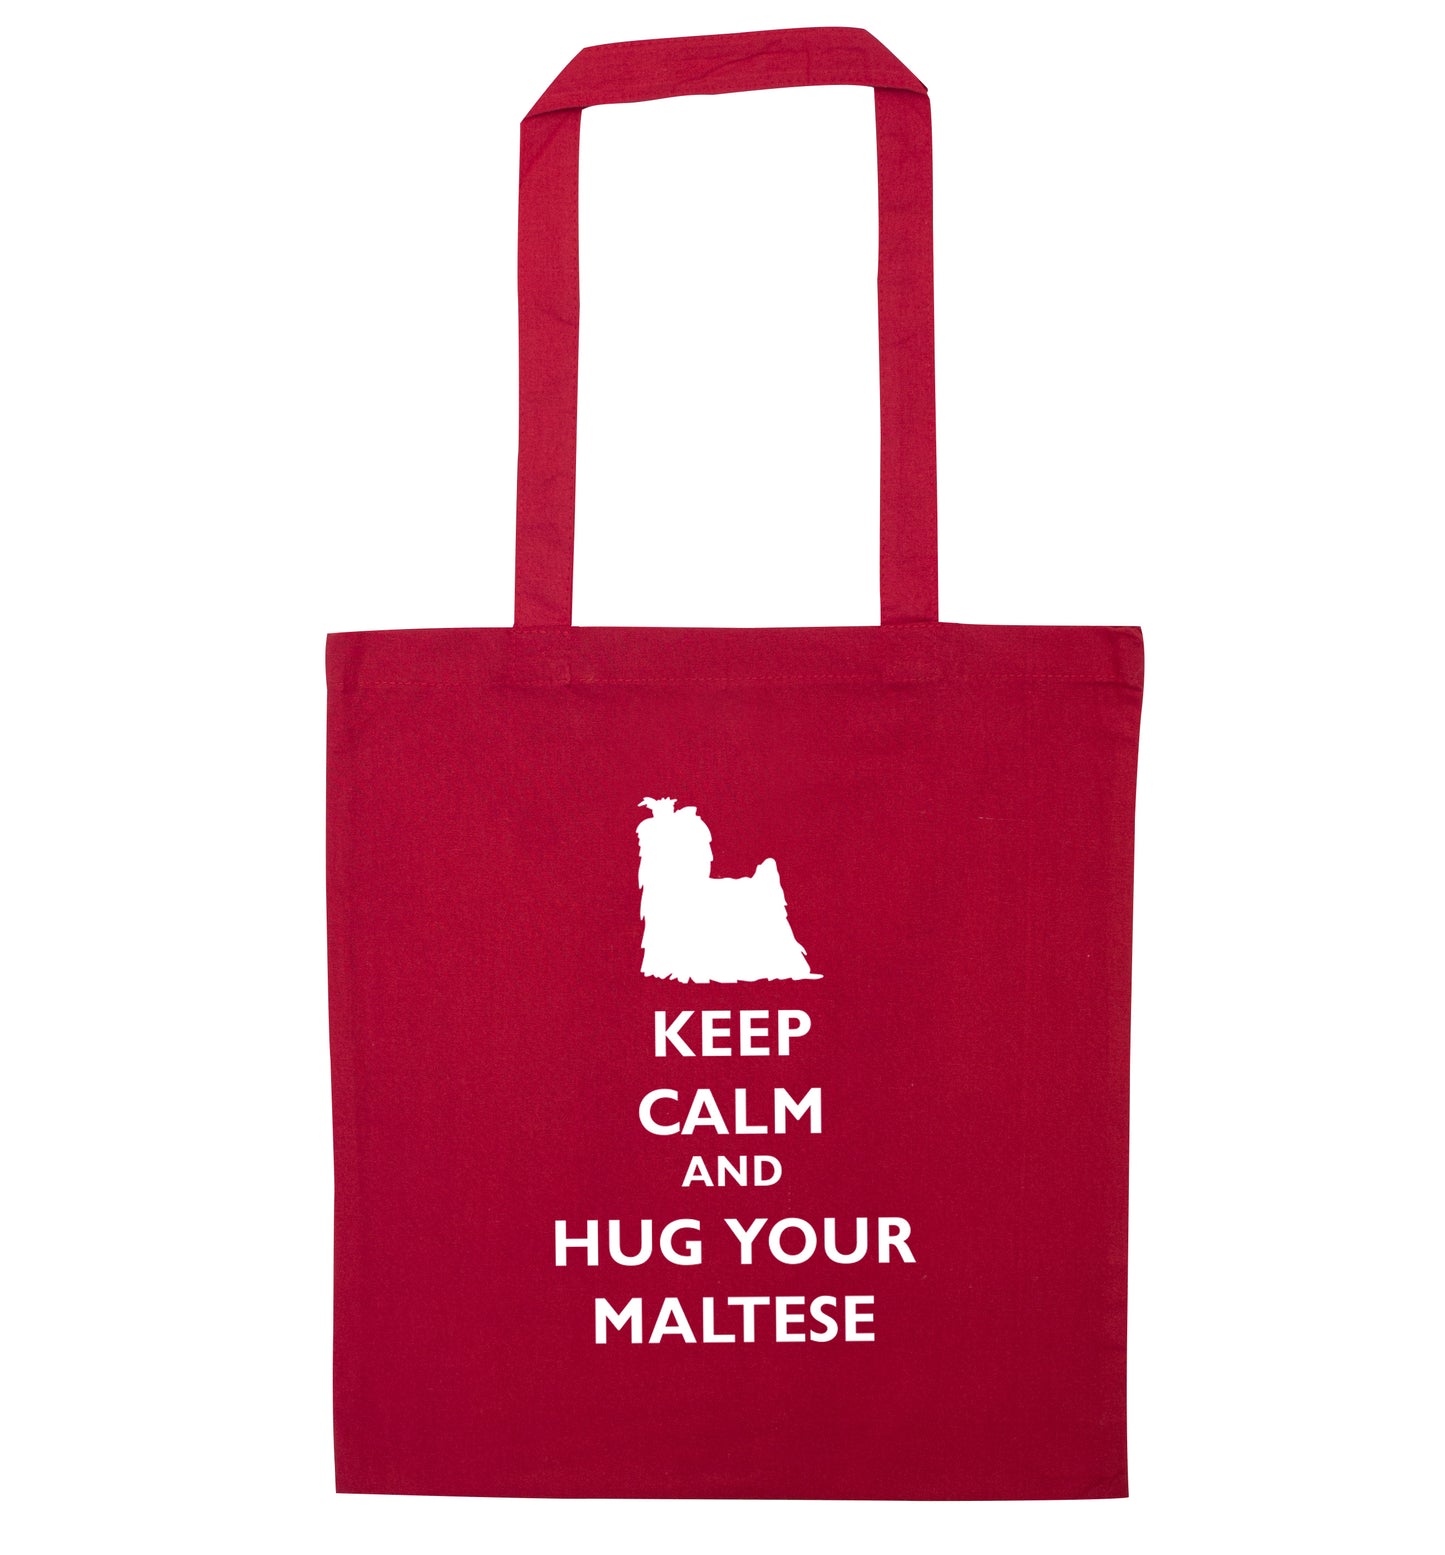 Keep calm and hug your maltese red tote bag